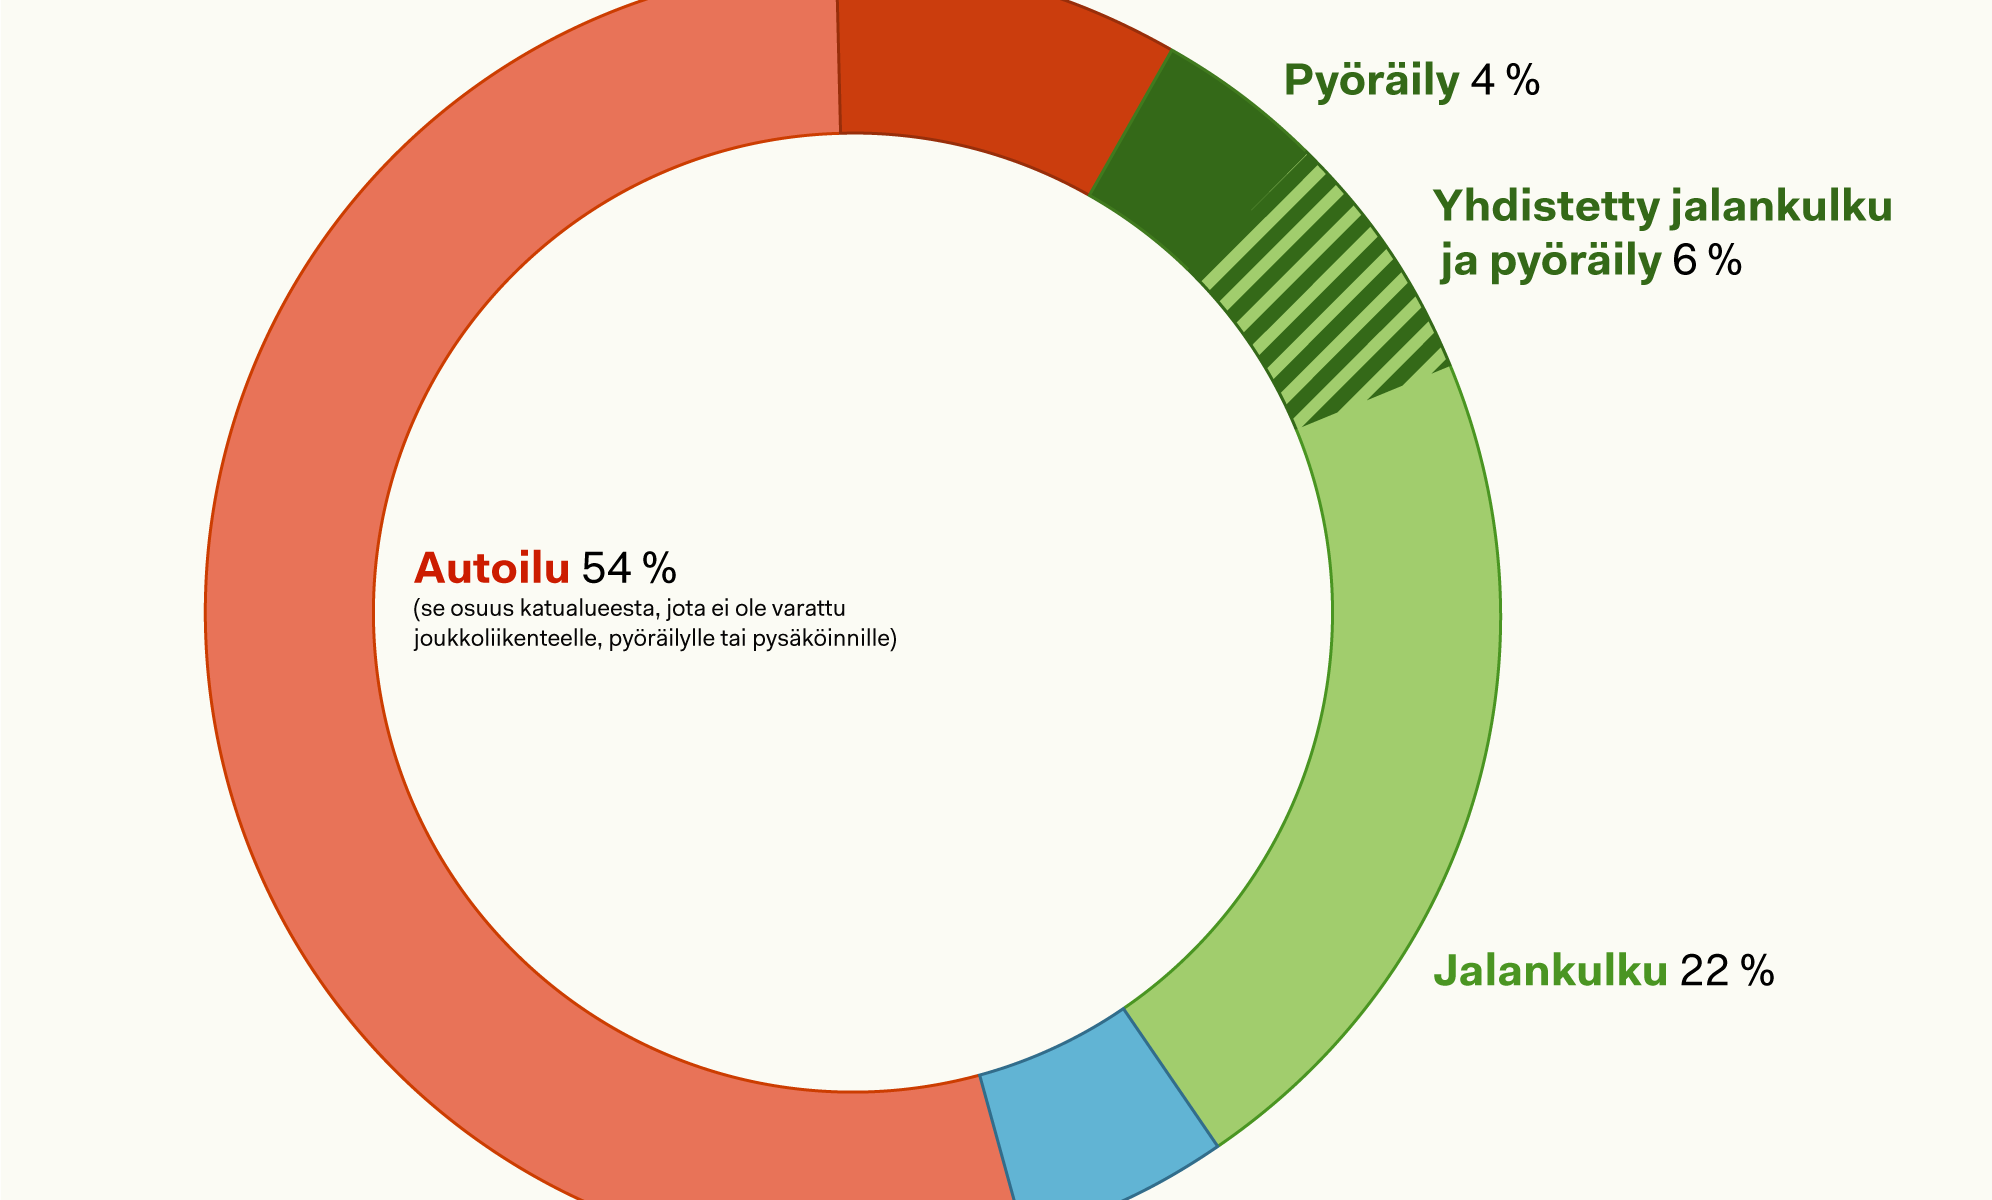 Rengaskuvio katutilan jakautumisesta Helsingin kantakaupungissa. Jakauma on: Autoilu 54 %, pysäköinti 9 %, pyöräily 4 %, yhdistetty pyöräily ja jalankulku 6 %, jalankulku 22 %, joukkoliikenne 5% (arvio).